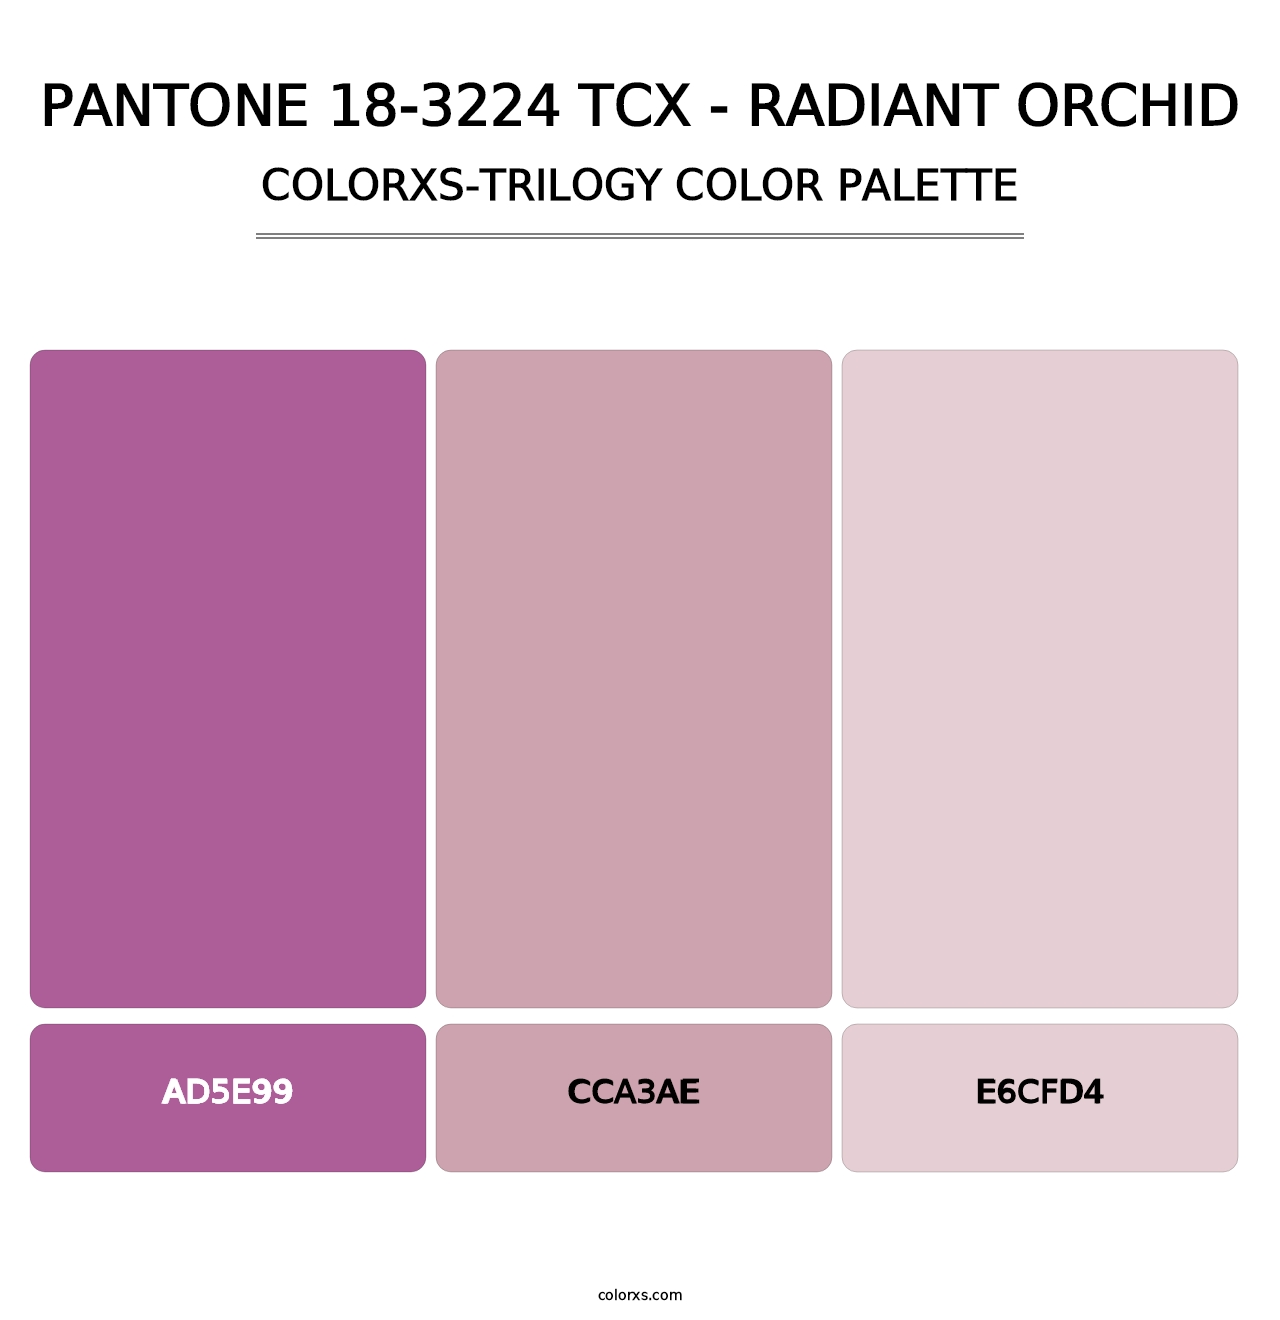 PANTONE 18-3224 TCX - Radiant Orchid - Colorxs Trilogy Palette